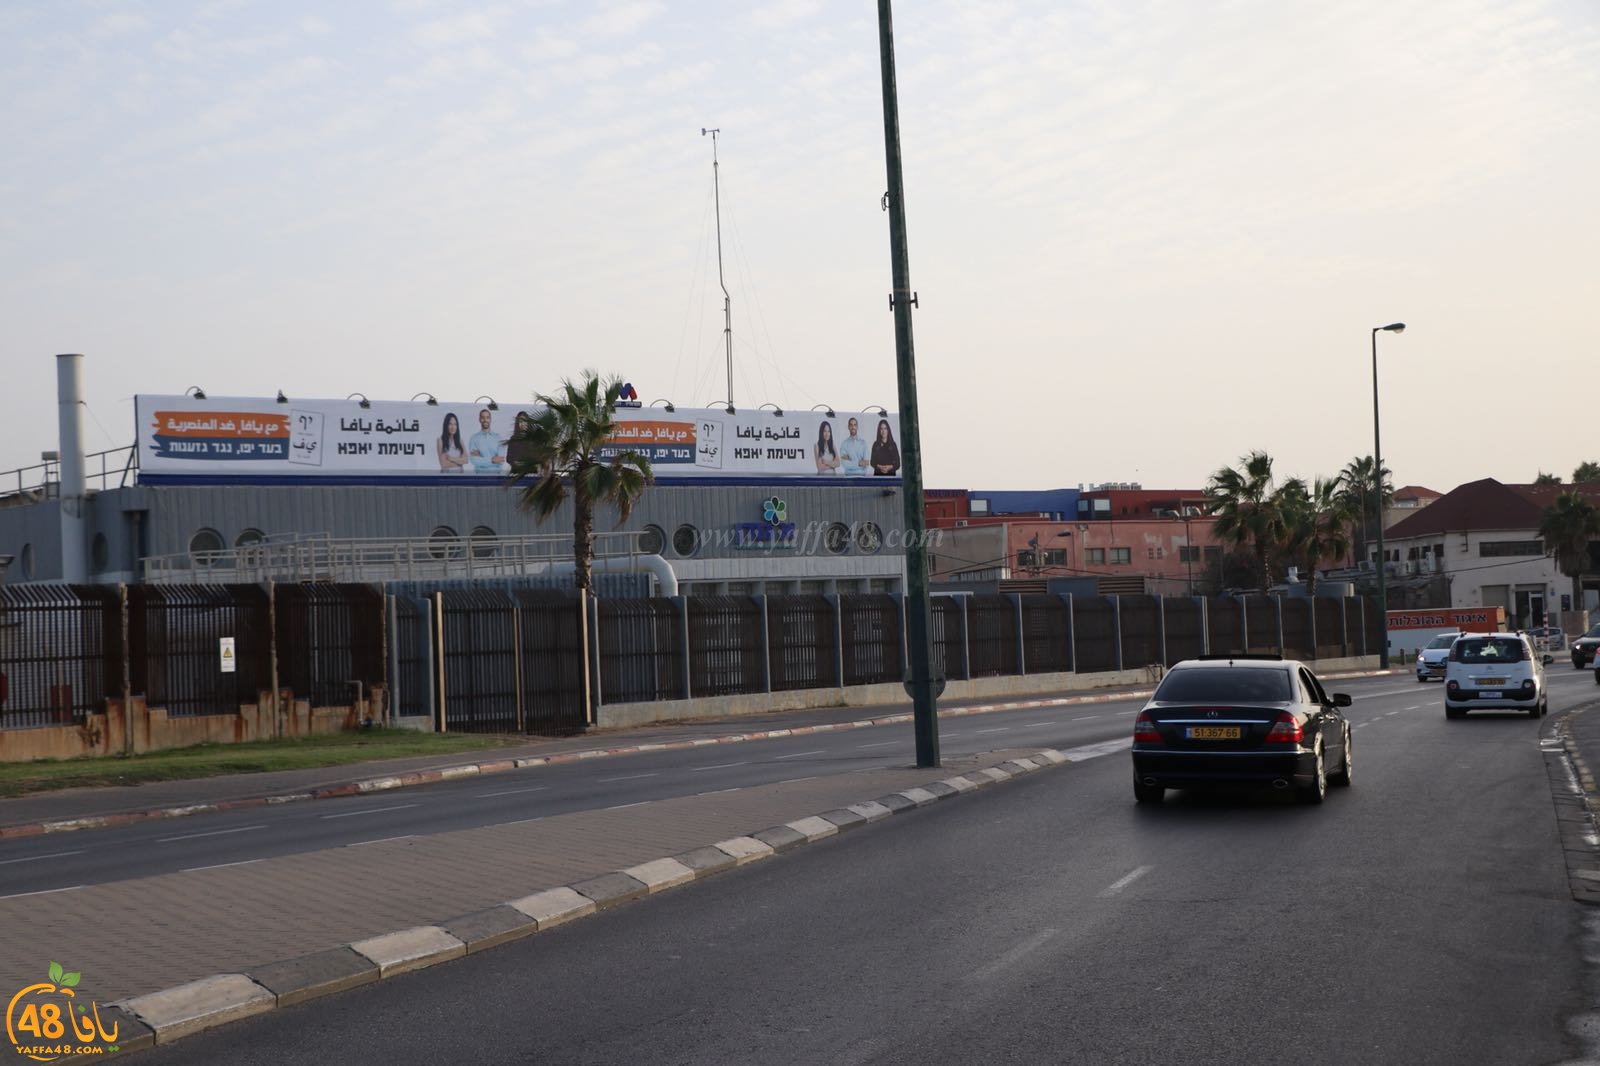 الليكود يحاول ضرب الحملة الانتخابية لقائمة يافا بإزالة لافتات كبيرة تابعة للقائمة